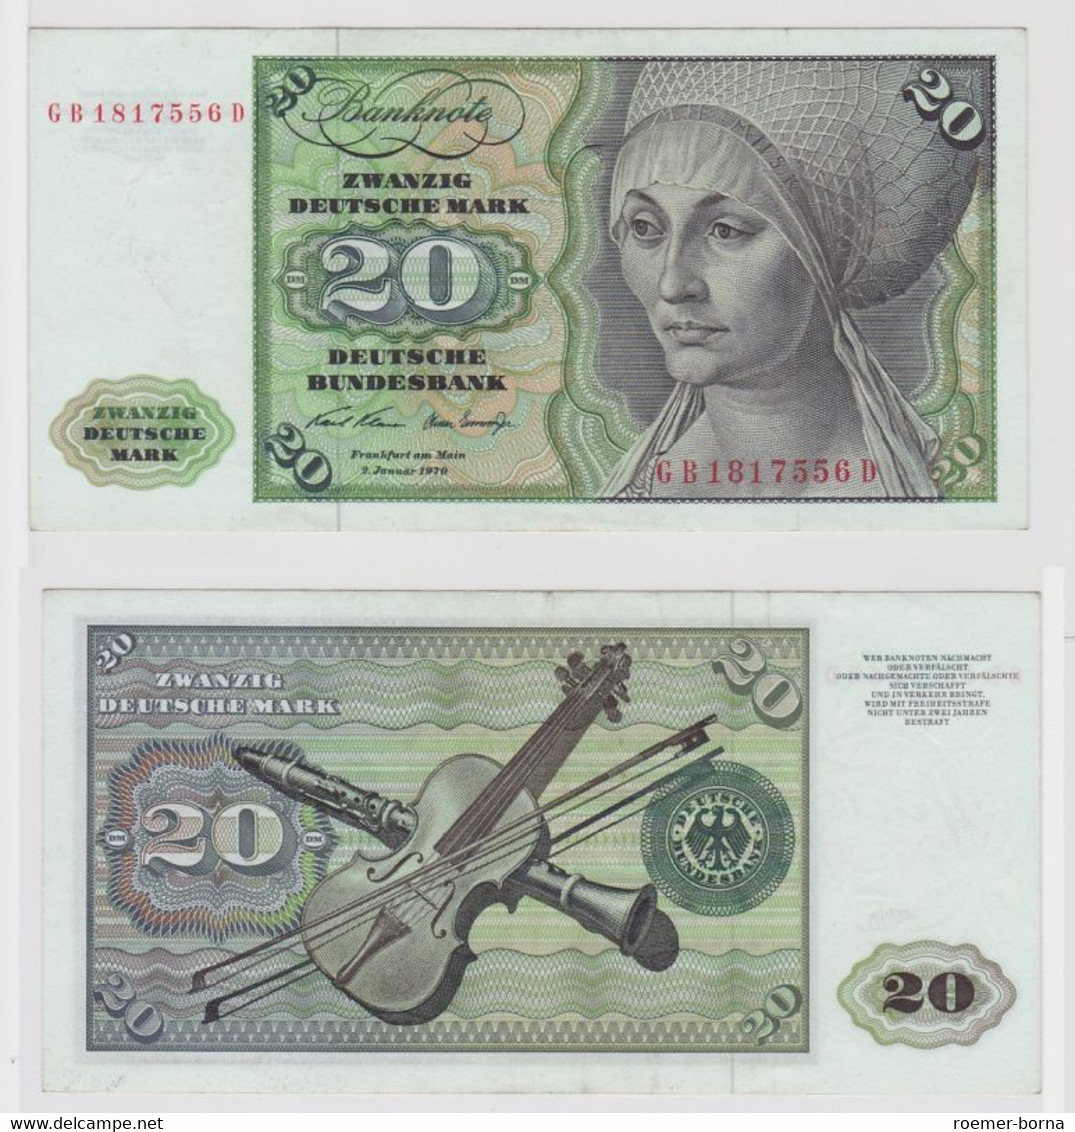 T147942 Banknote 20 DM Deutsche Mark Ro. 271a Schein 2.Jan. 1970 KN GB 1817556 D - 20 Deutsche Mark